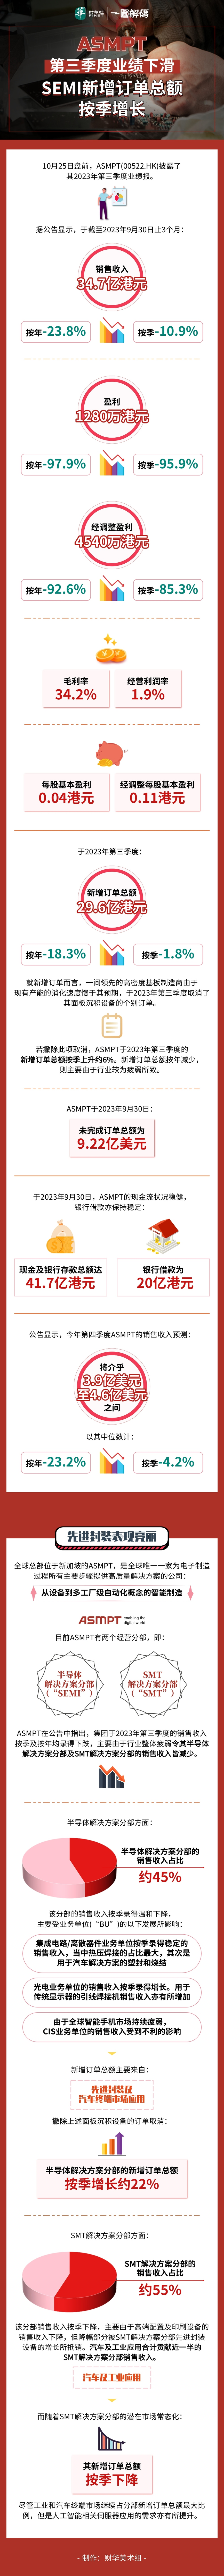 一图解码：ASMPT第三季度业绩下滑 SEMI新增订单总额按季增长原創